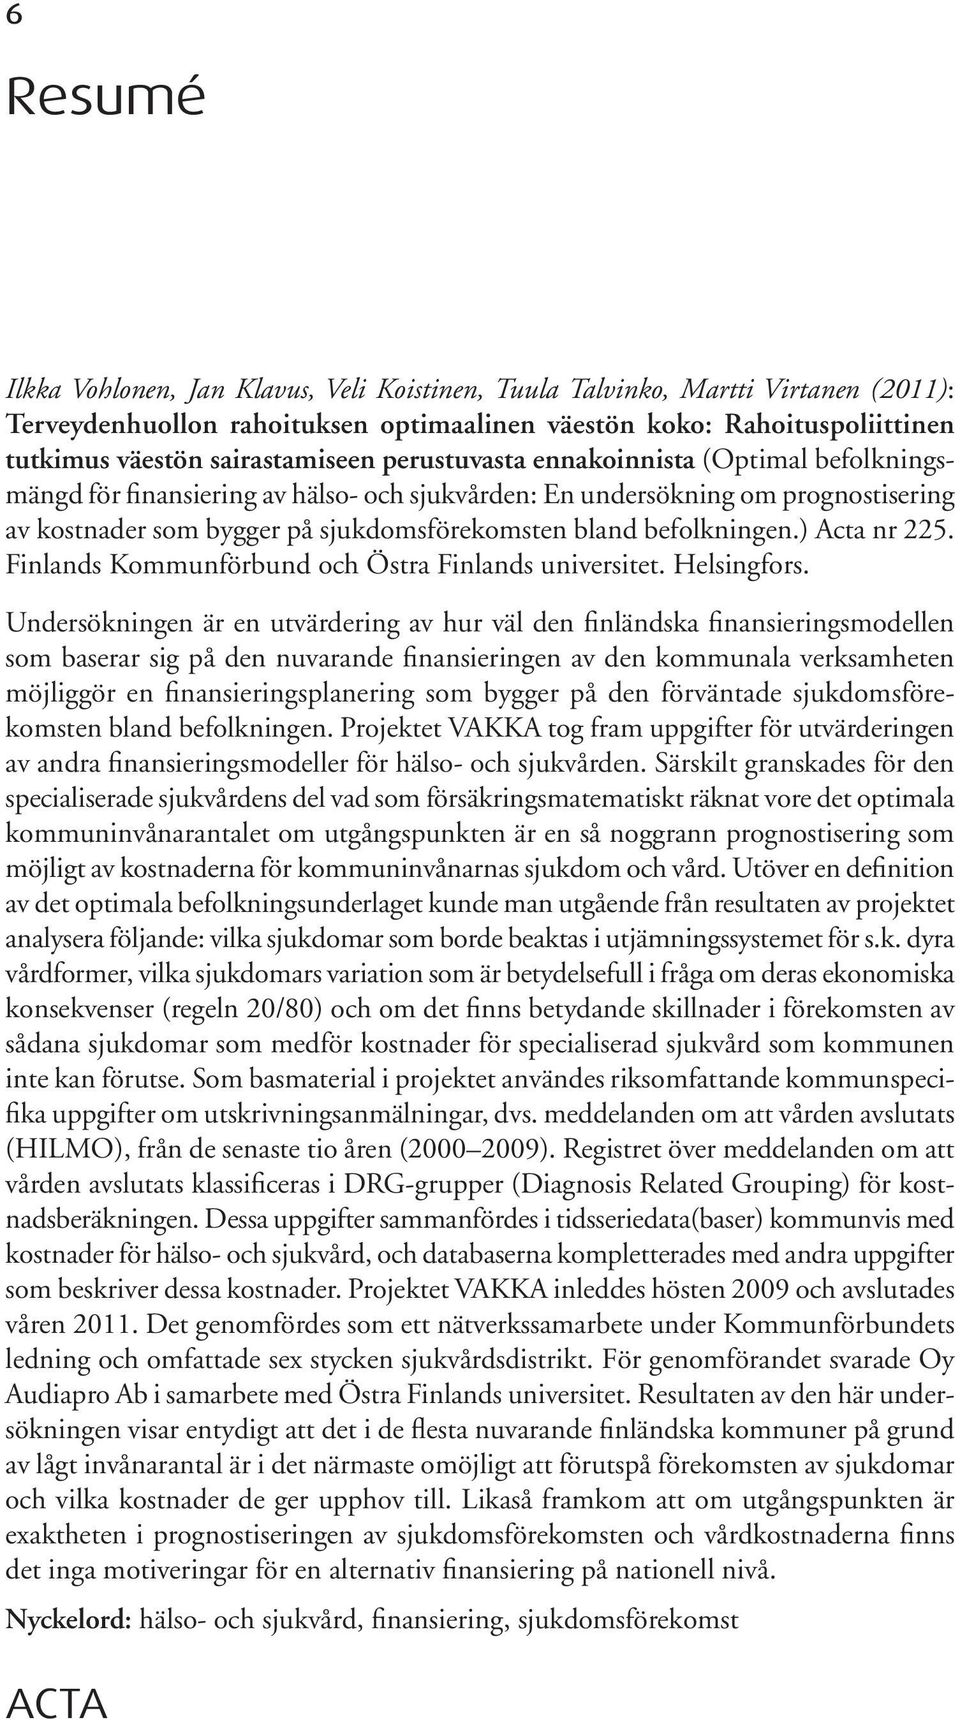 ) Acta nr 225. Finlands Kommunförbund och Östra Finlands universitet. Helsingfors.